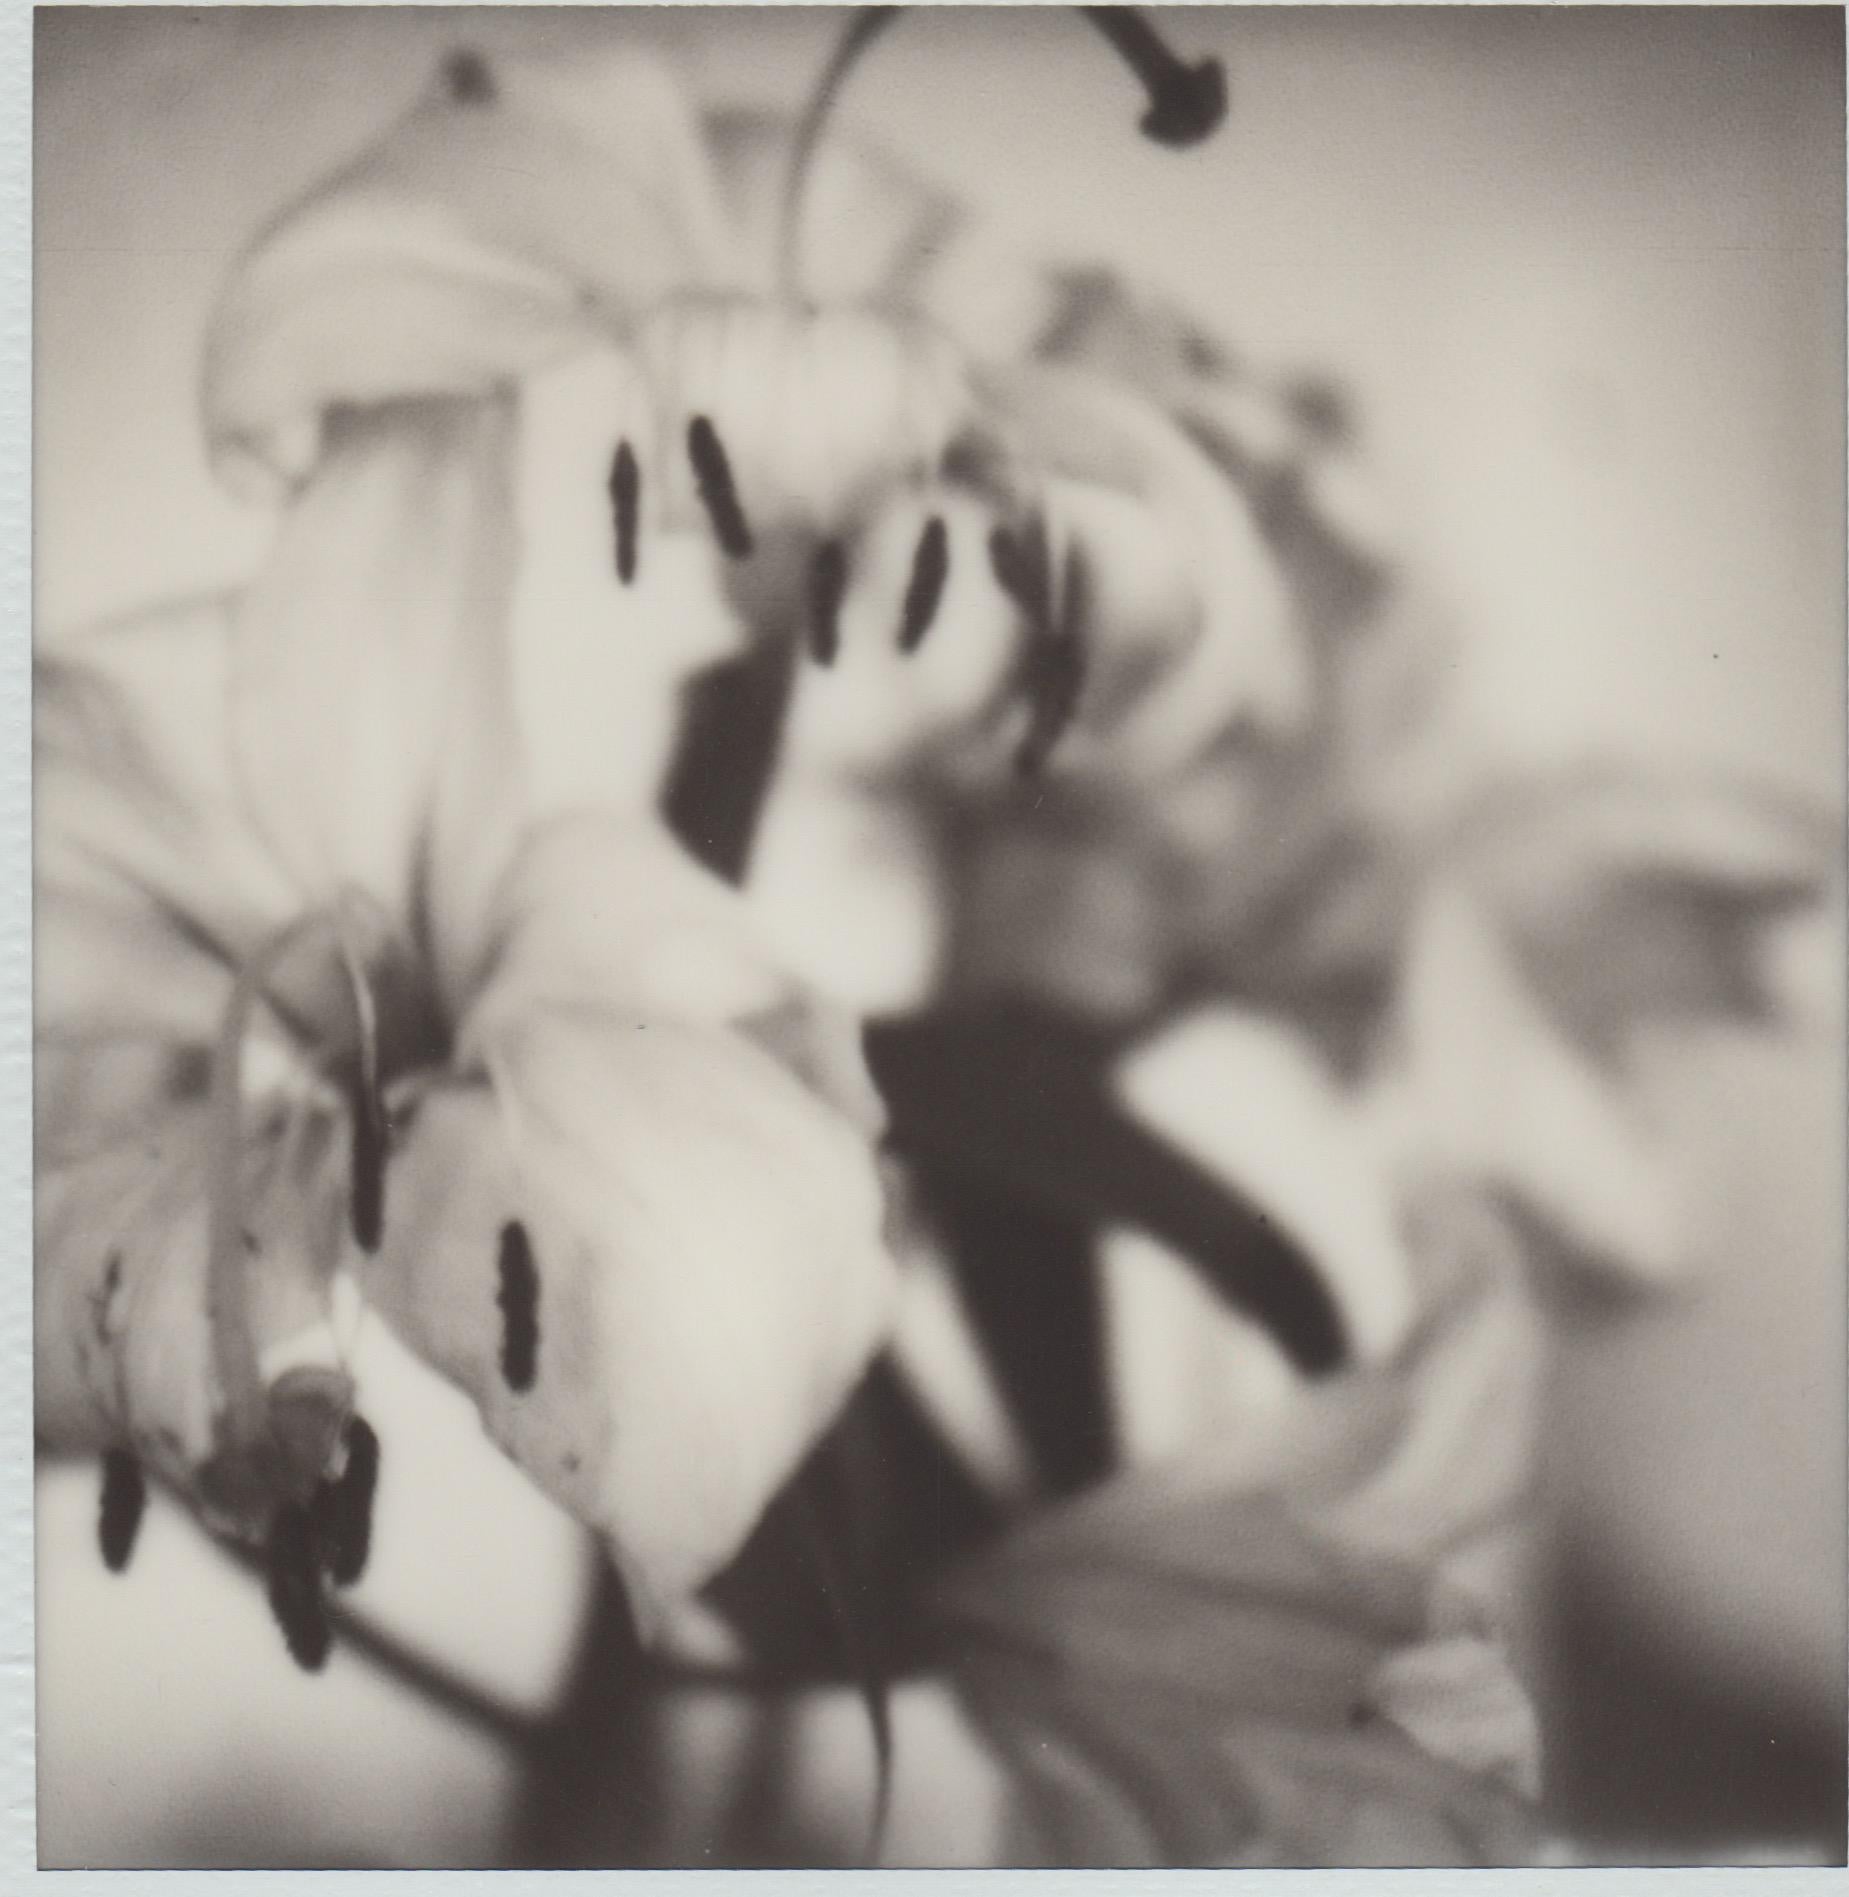 Past Bloom II - Zeitgenössische Schwarz-Weiß-Original-Poloroid-Fotografie gerahmt (Romantik), Photograph, von Pia Clodi